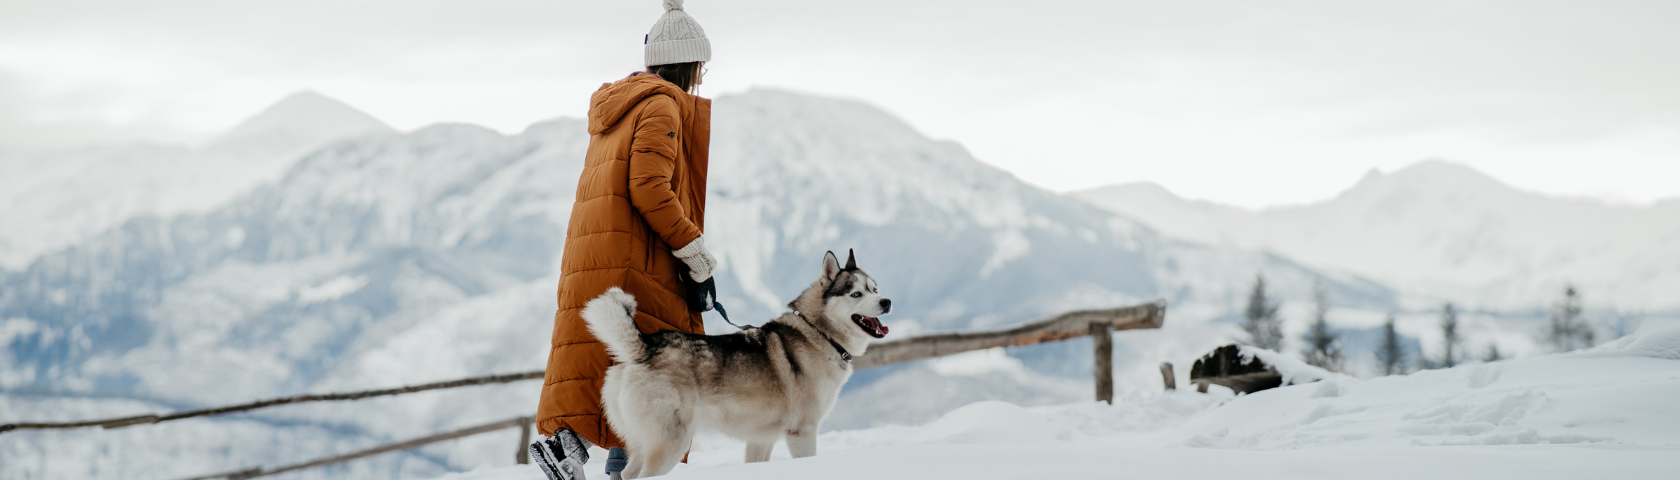 Зима в планината! Най-красивите места, заснети от участниците в конкурса Winterspiration